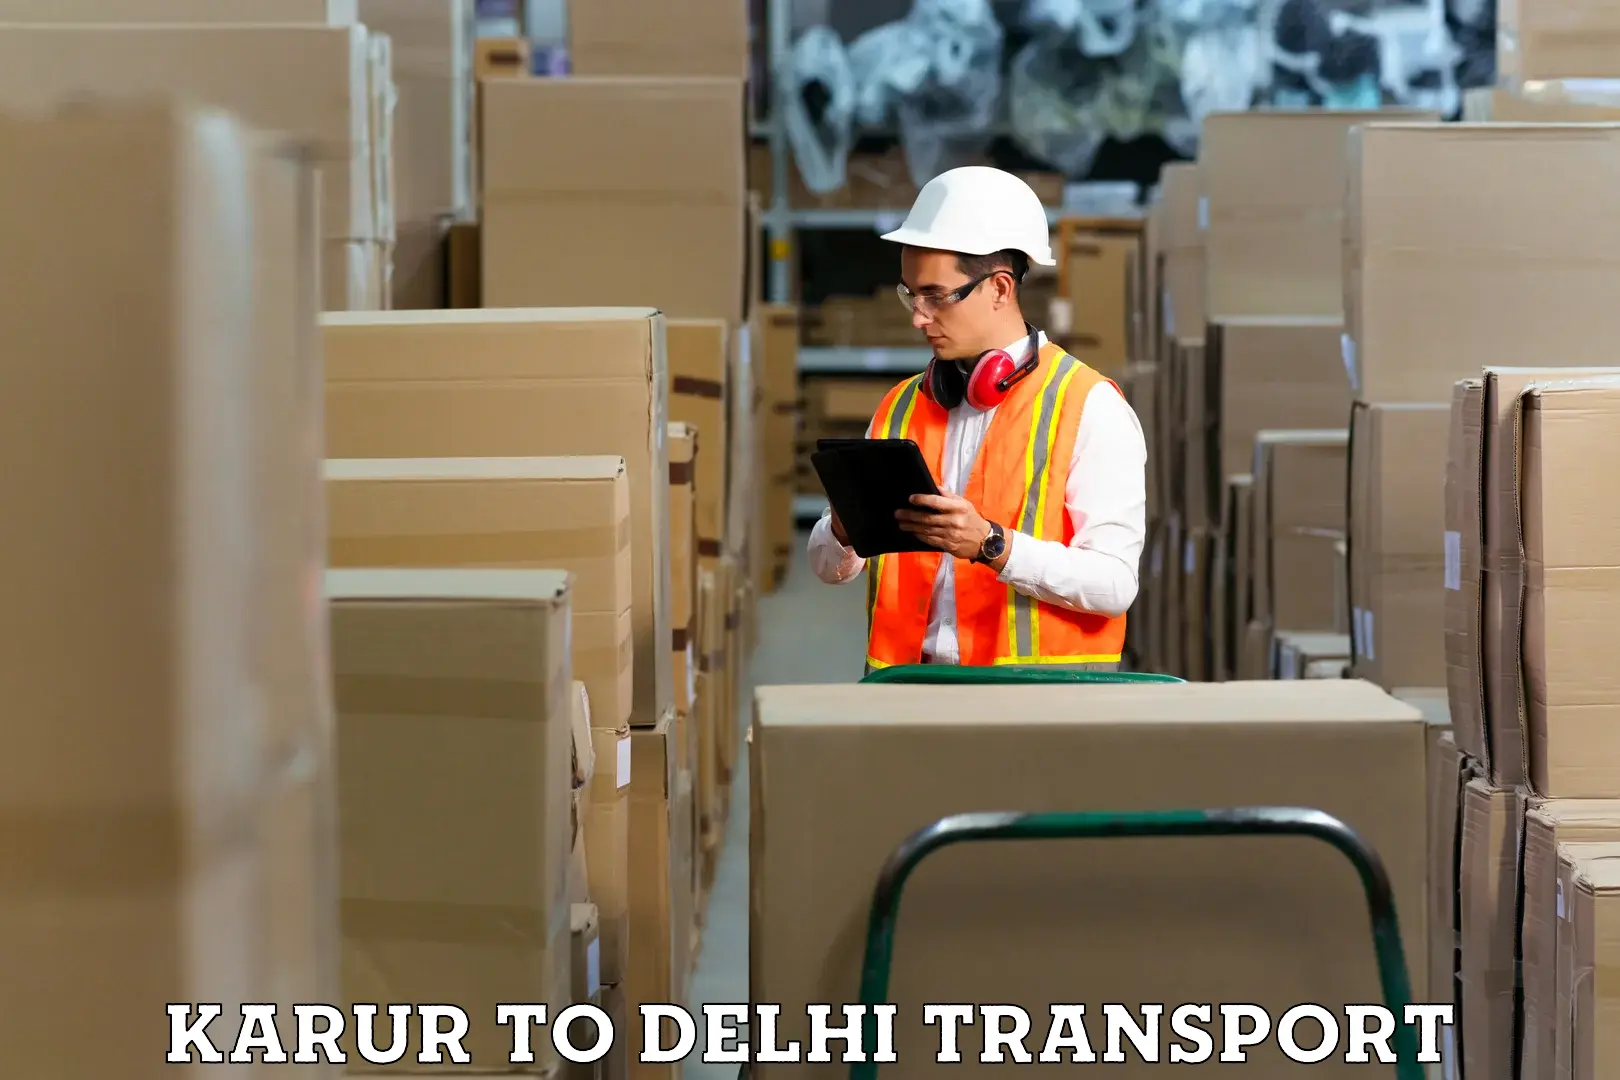 Express transport services Karur to Jamia Millia Islamia New Delhi